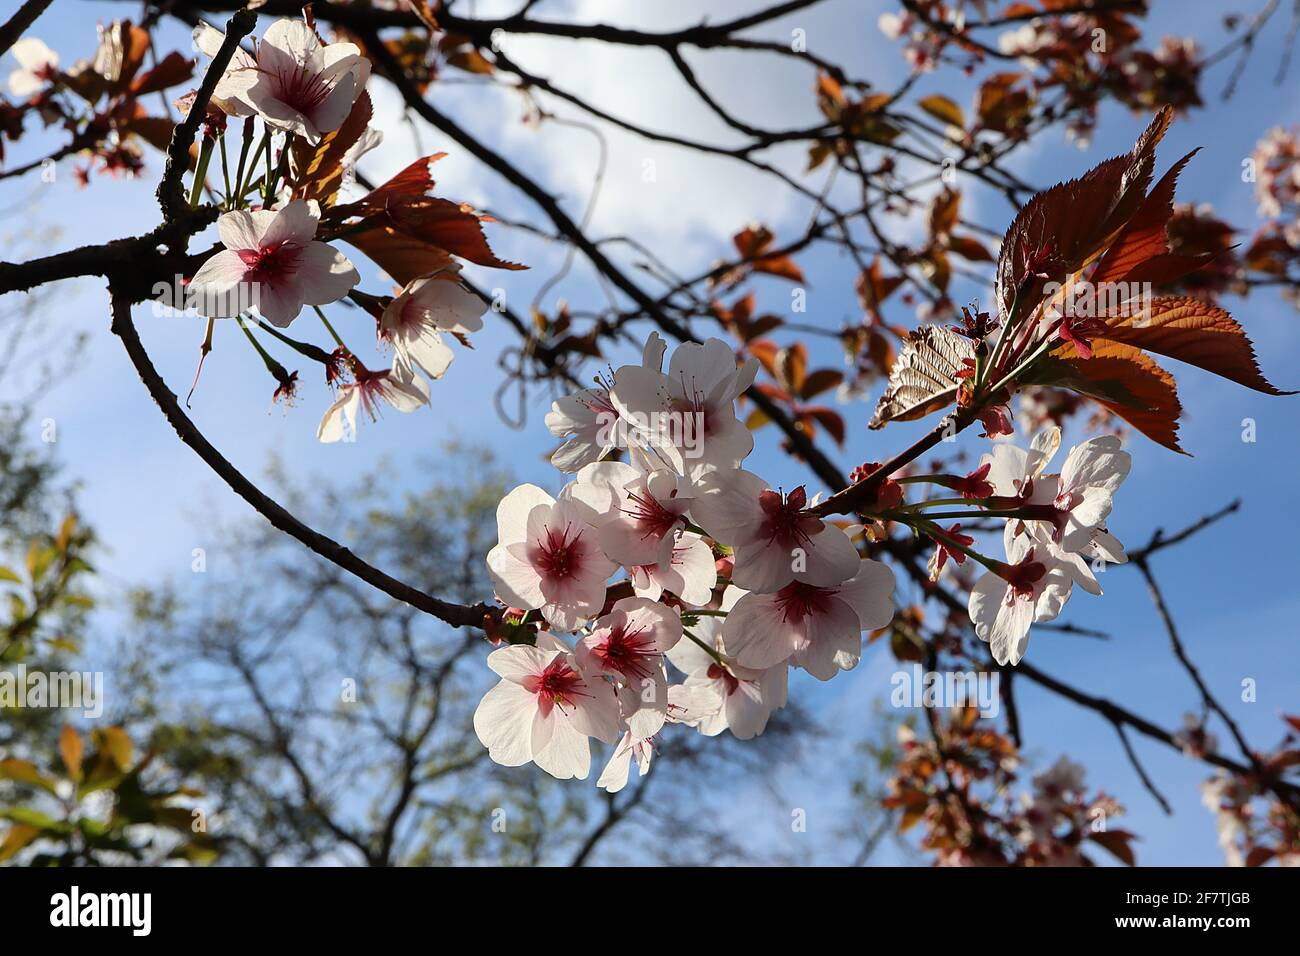 Prunus cerasifera Pissardii Nigra viola ciliegia prugna – conchiglia rosa fiori a forma di ciotola con molte stampigliature, steli rossi, foglie marroni, marzo, Regno Unito Foto Stock